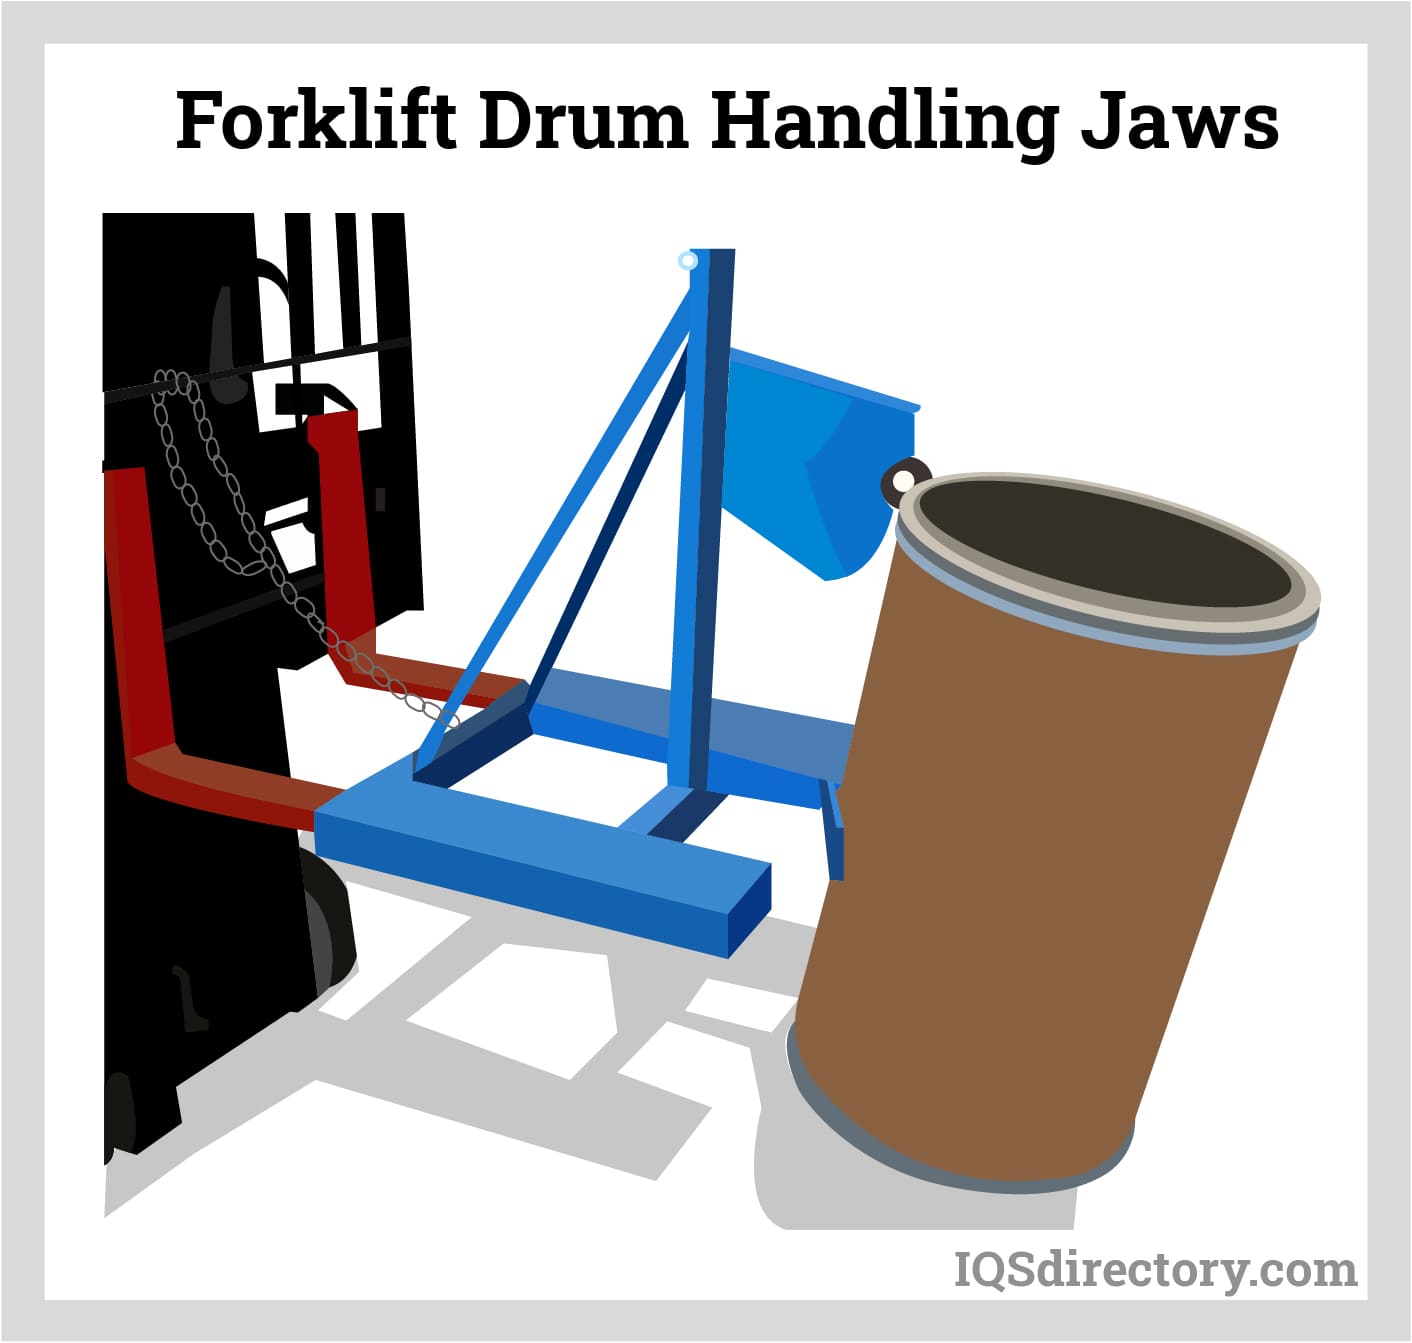 Forklift Drum Handling Jaws